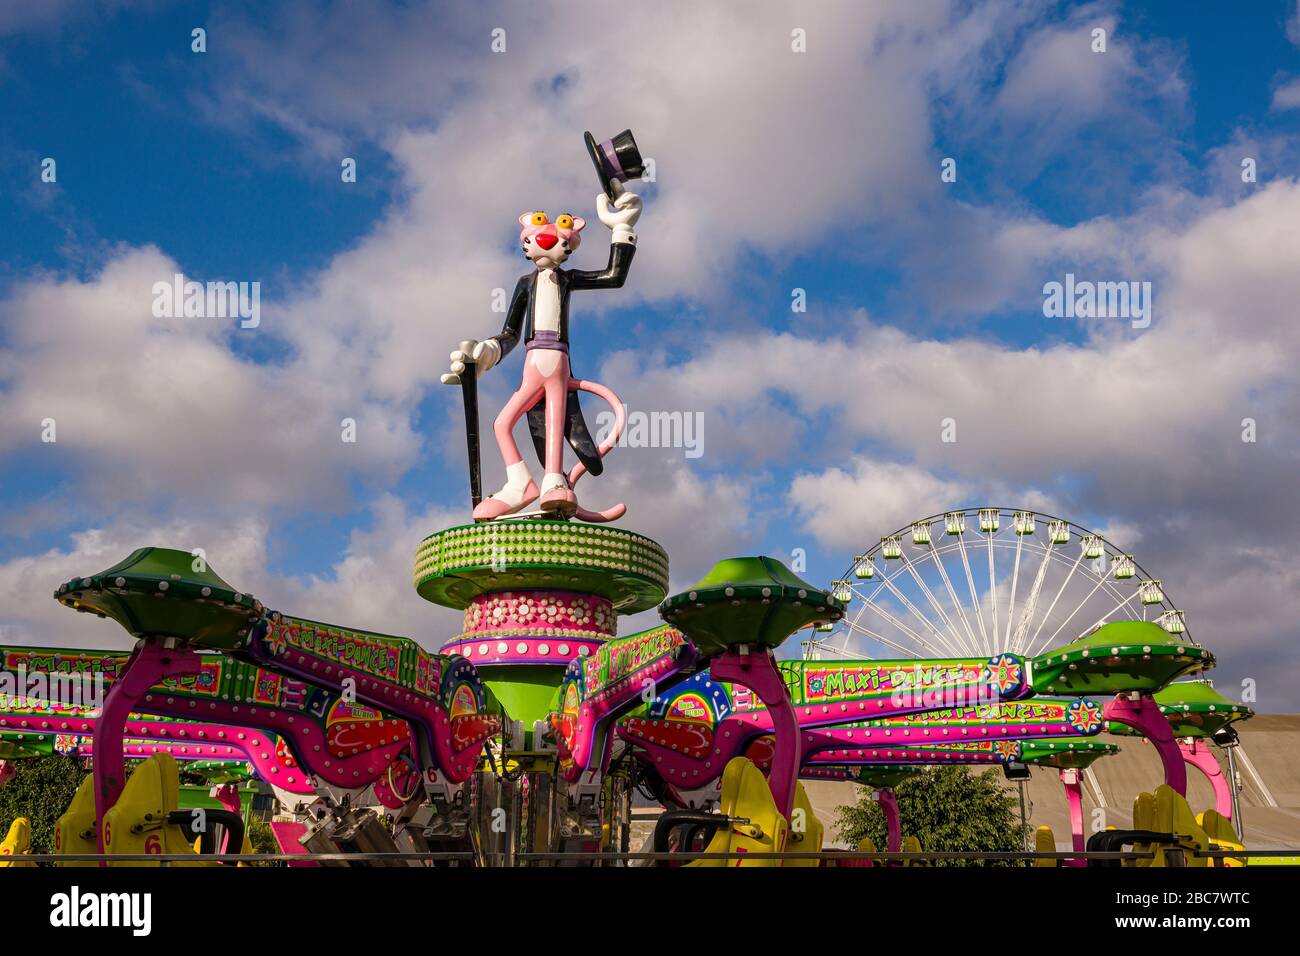 Scultura colorata del comico Pink Panther in un parco divertimenti Foto Stock